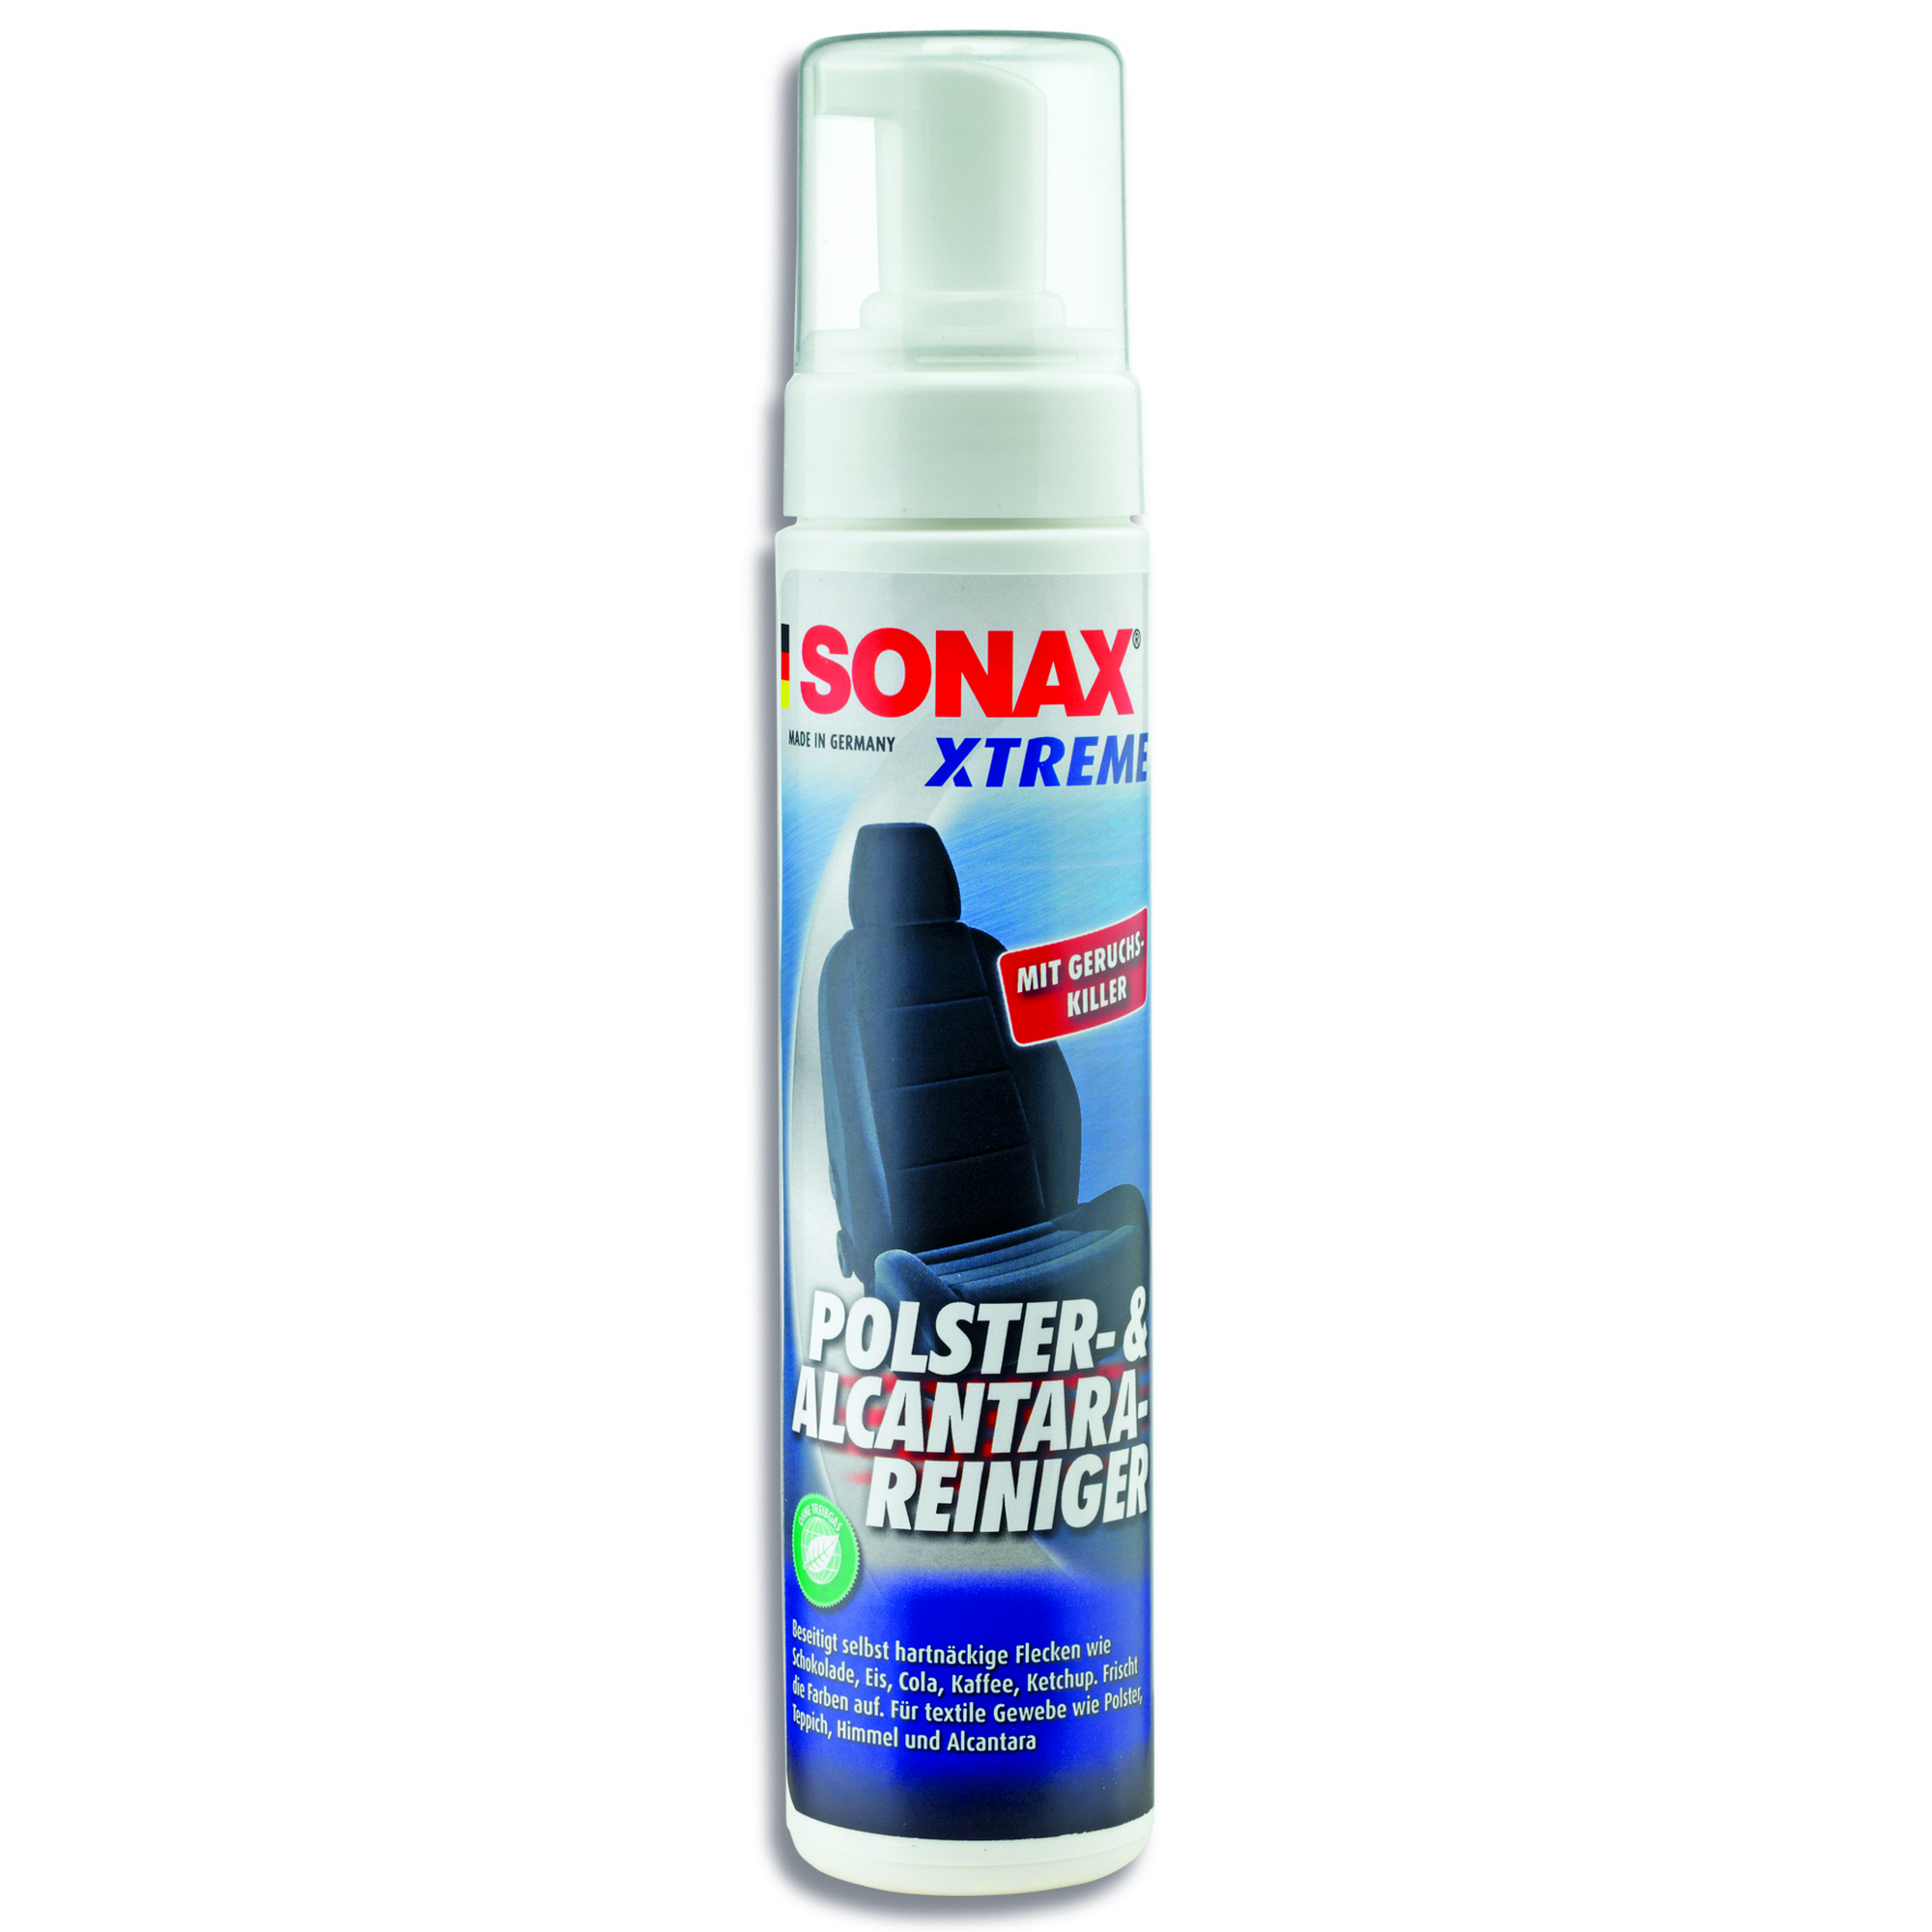 Polster- und Alcantara-Reiniger 'Xtreme' 250 ml + product picture